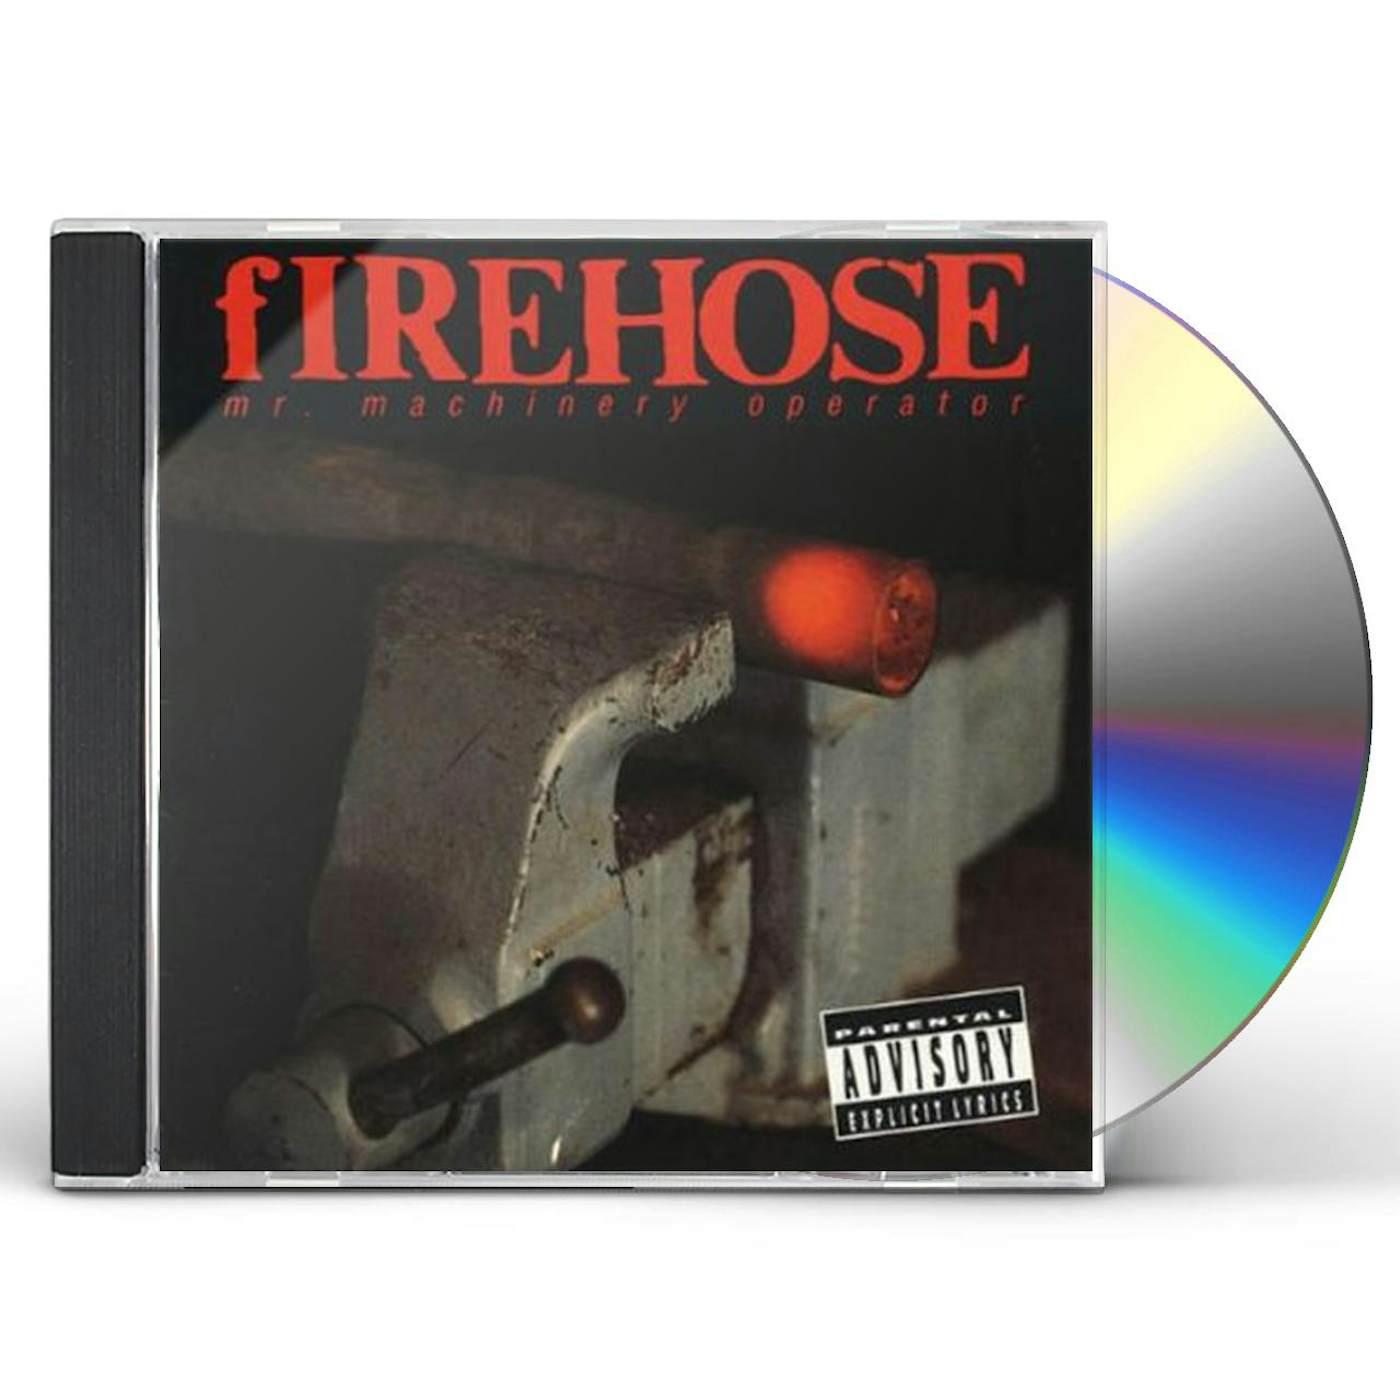 fIREHOSE MR MACHINERY OPERATOR CD